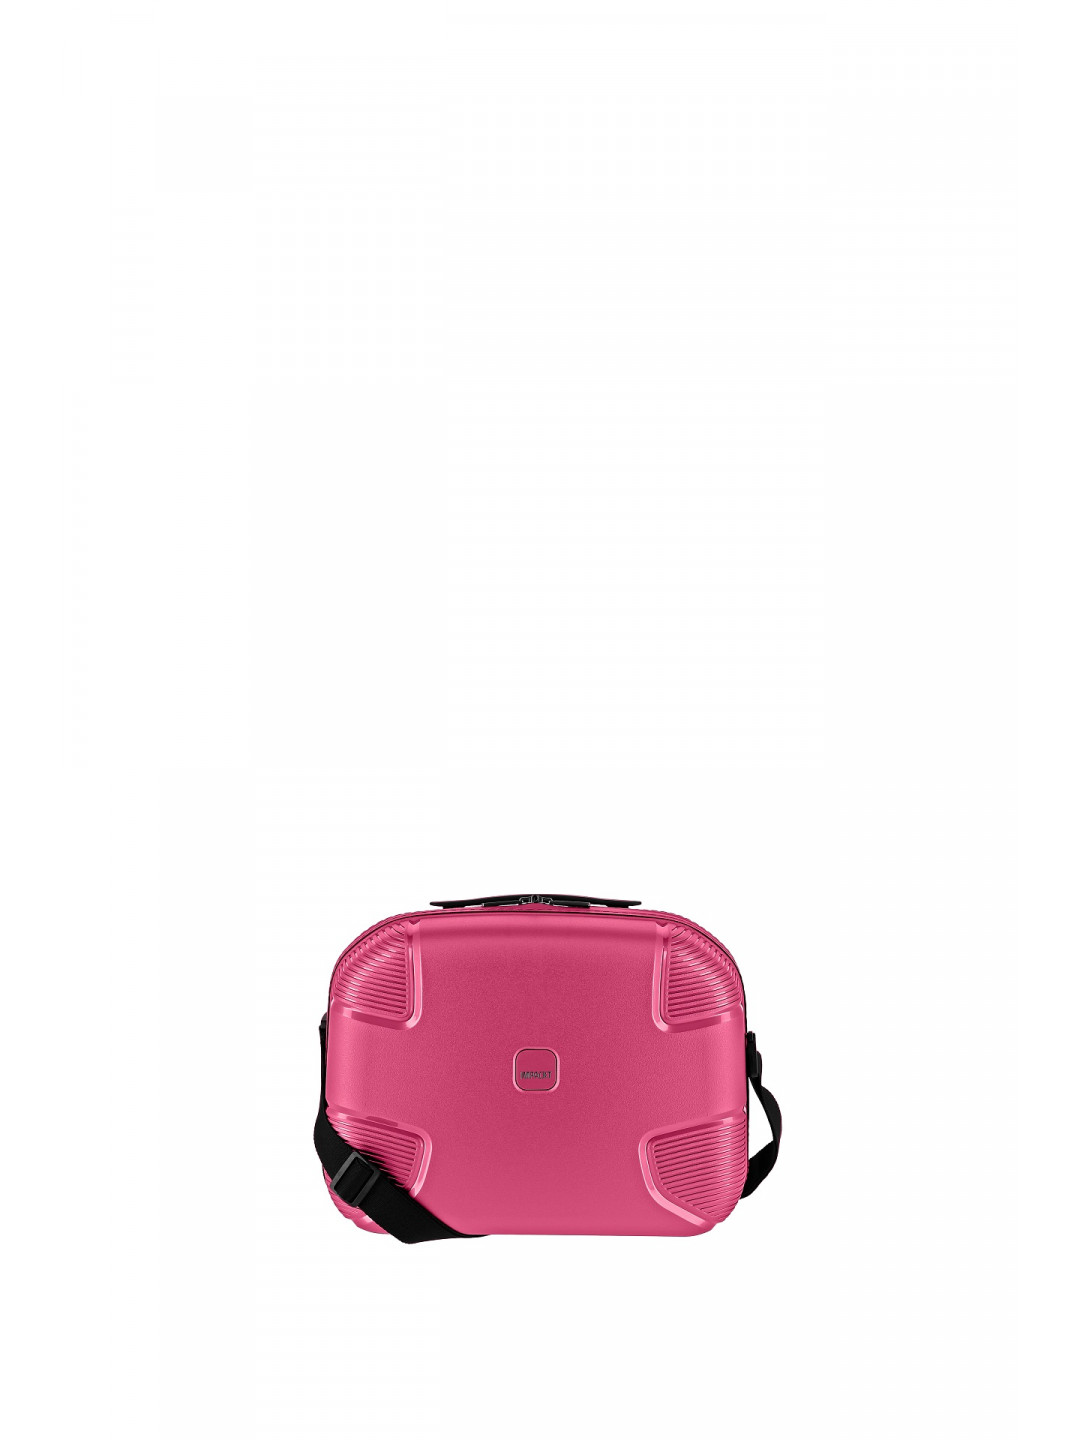 IMPACKT IP1 Beauty case Flora pink